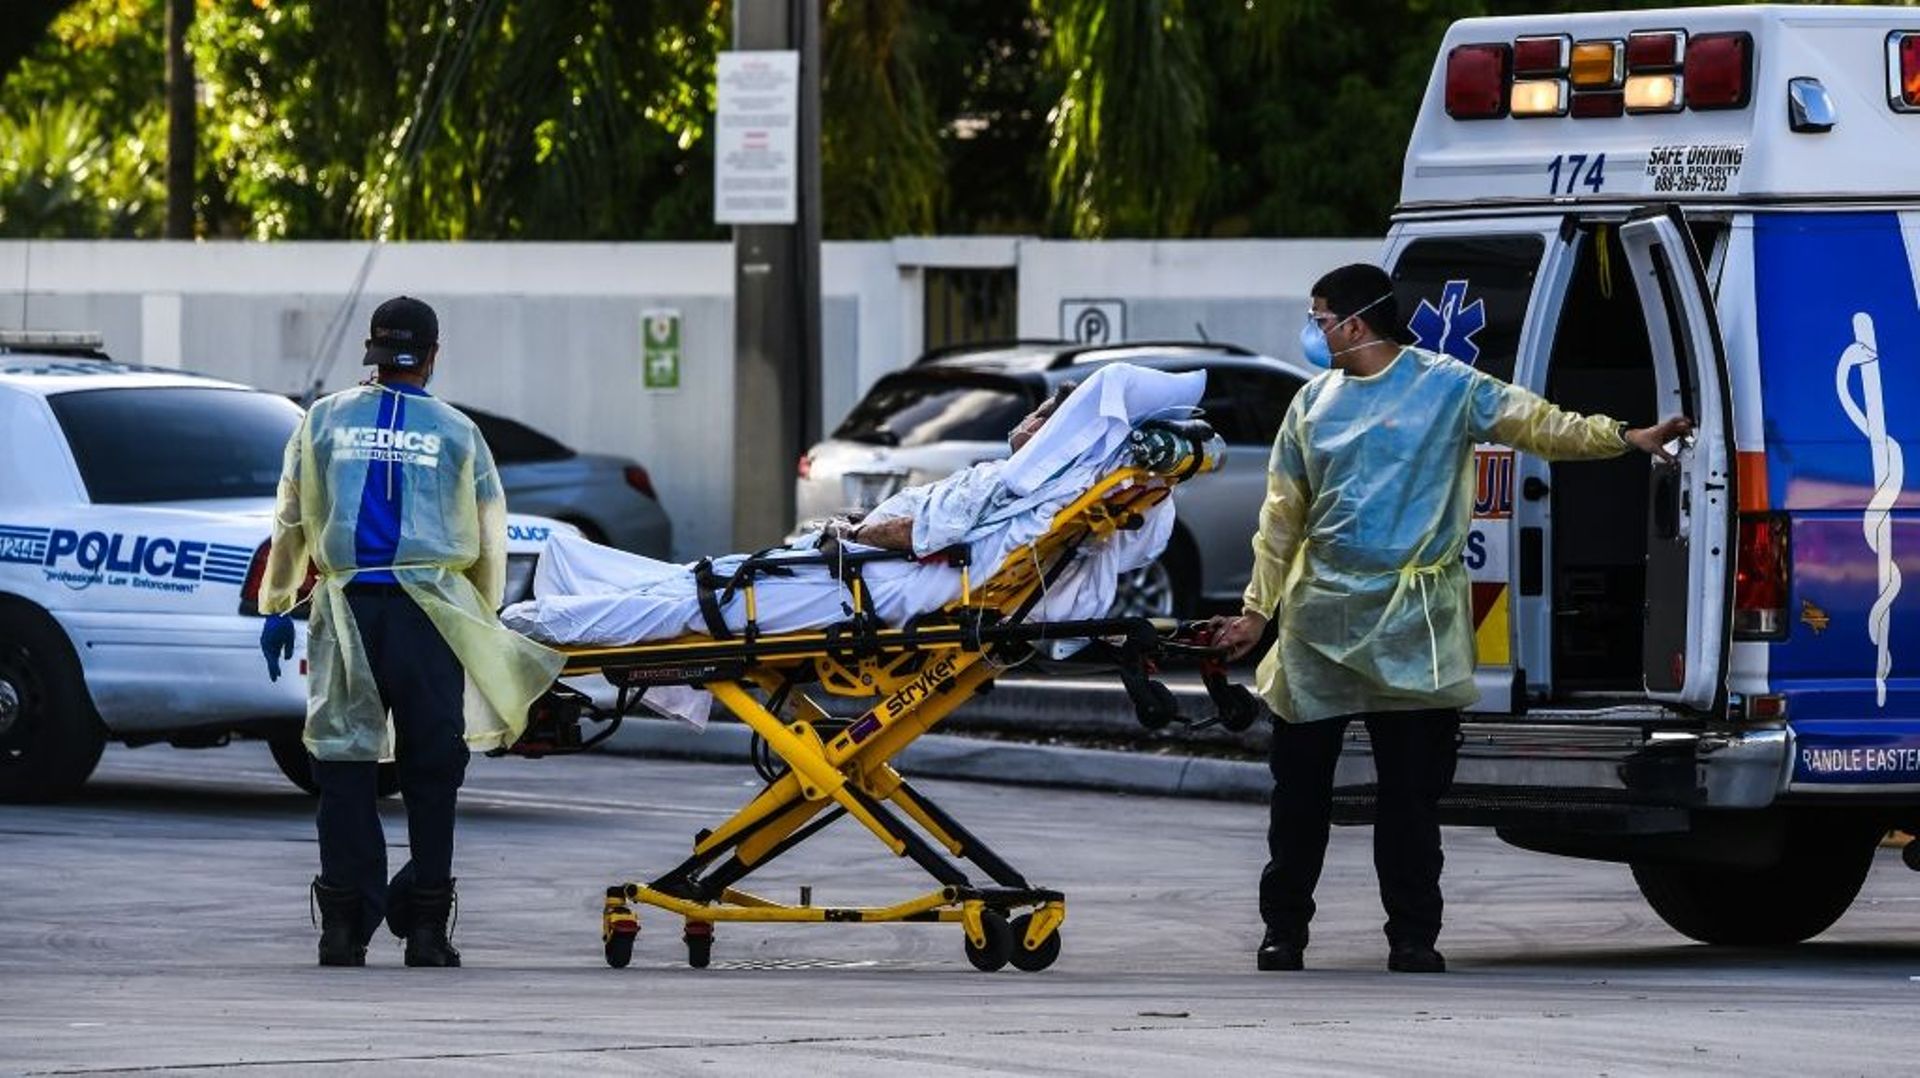 Des ambulanciers transportent un patient à un hôpital de Coral Gables, près de Miami, le 30 juillet 2020 en Floride